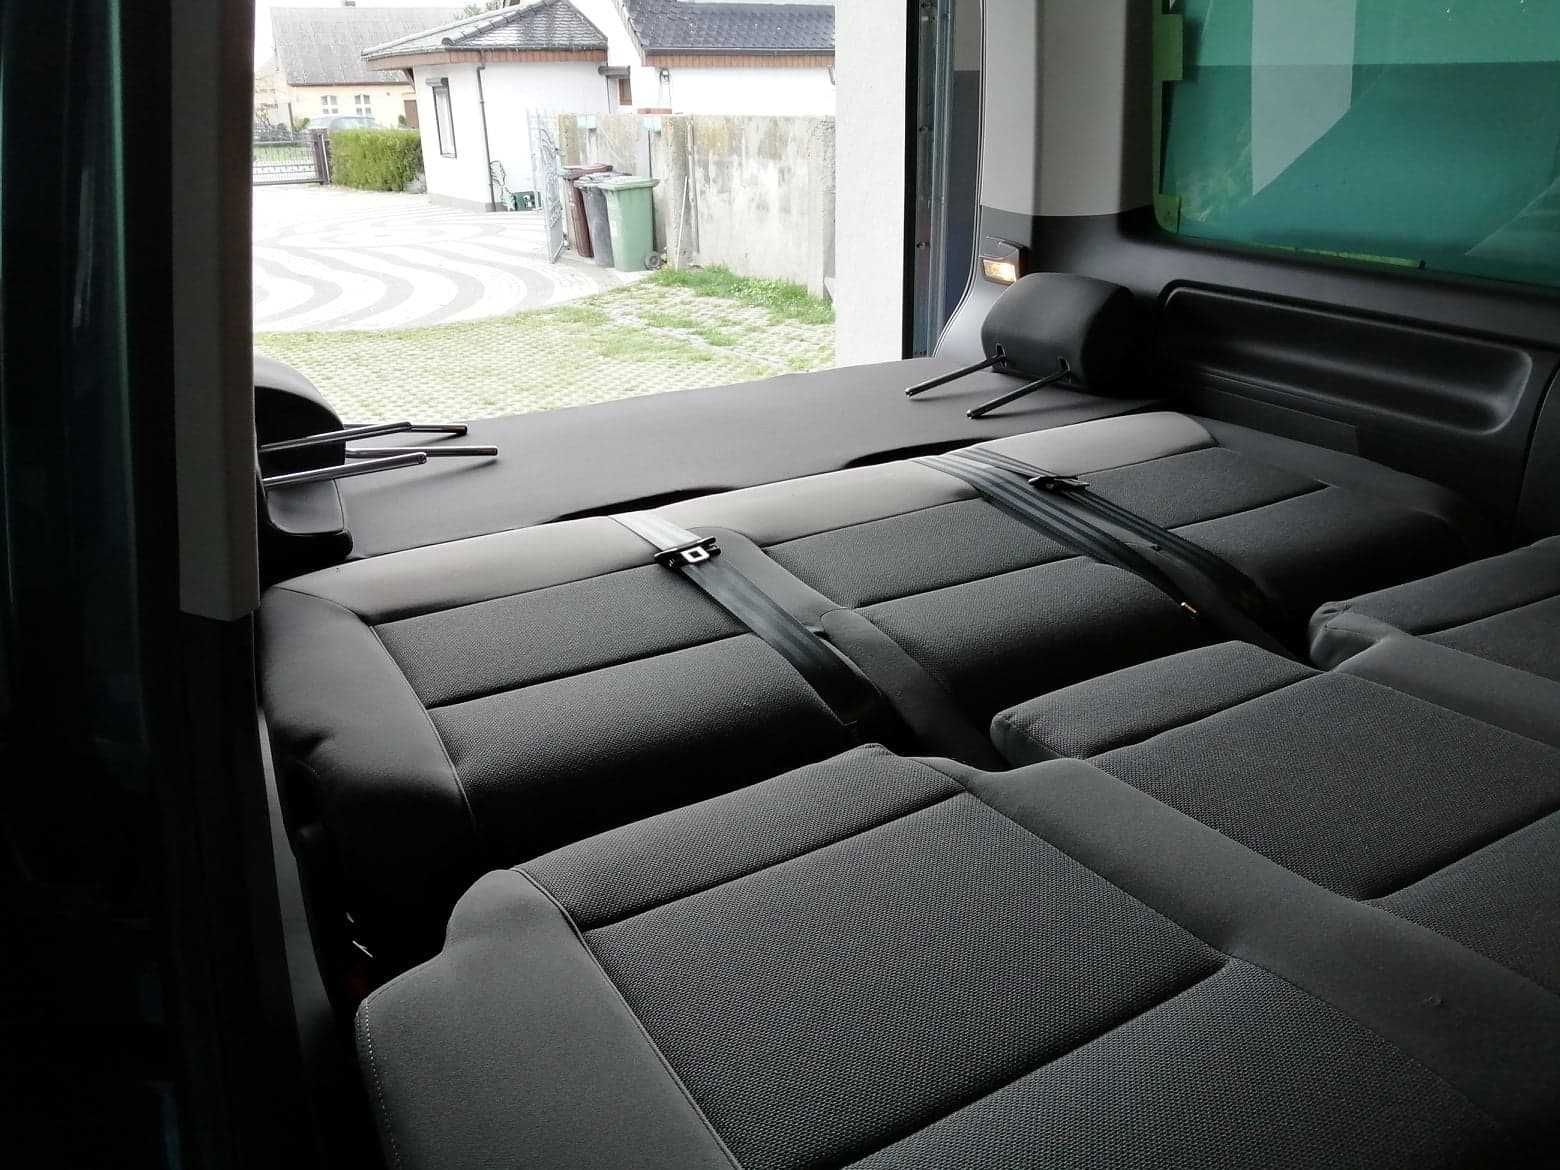 VW t5 łóżko półka multivan. Dostępna.